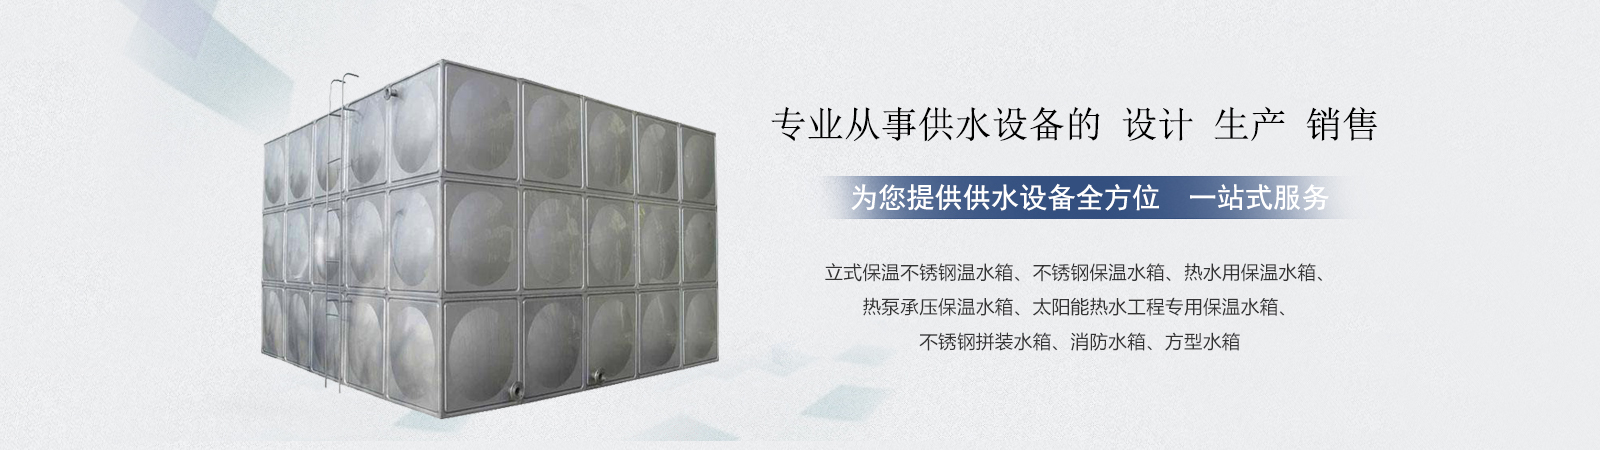 不锈钢生活水箱、亳州本地不锈钢生活水箱、亳州、亳州不锈钢生活水箱